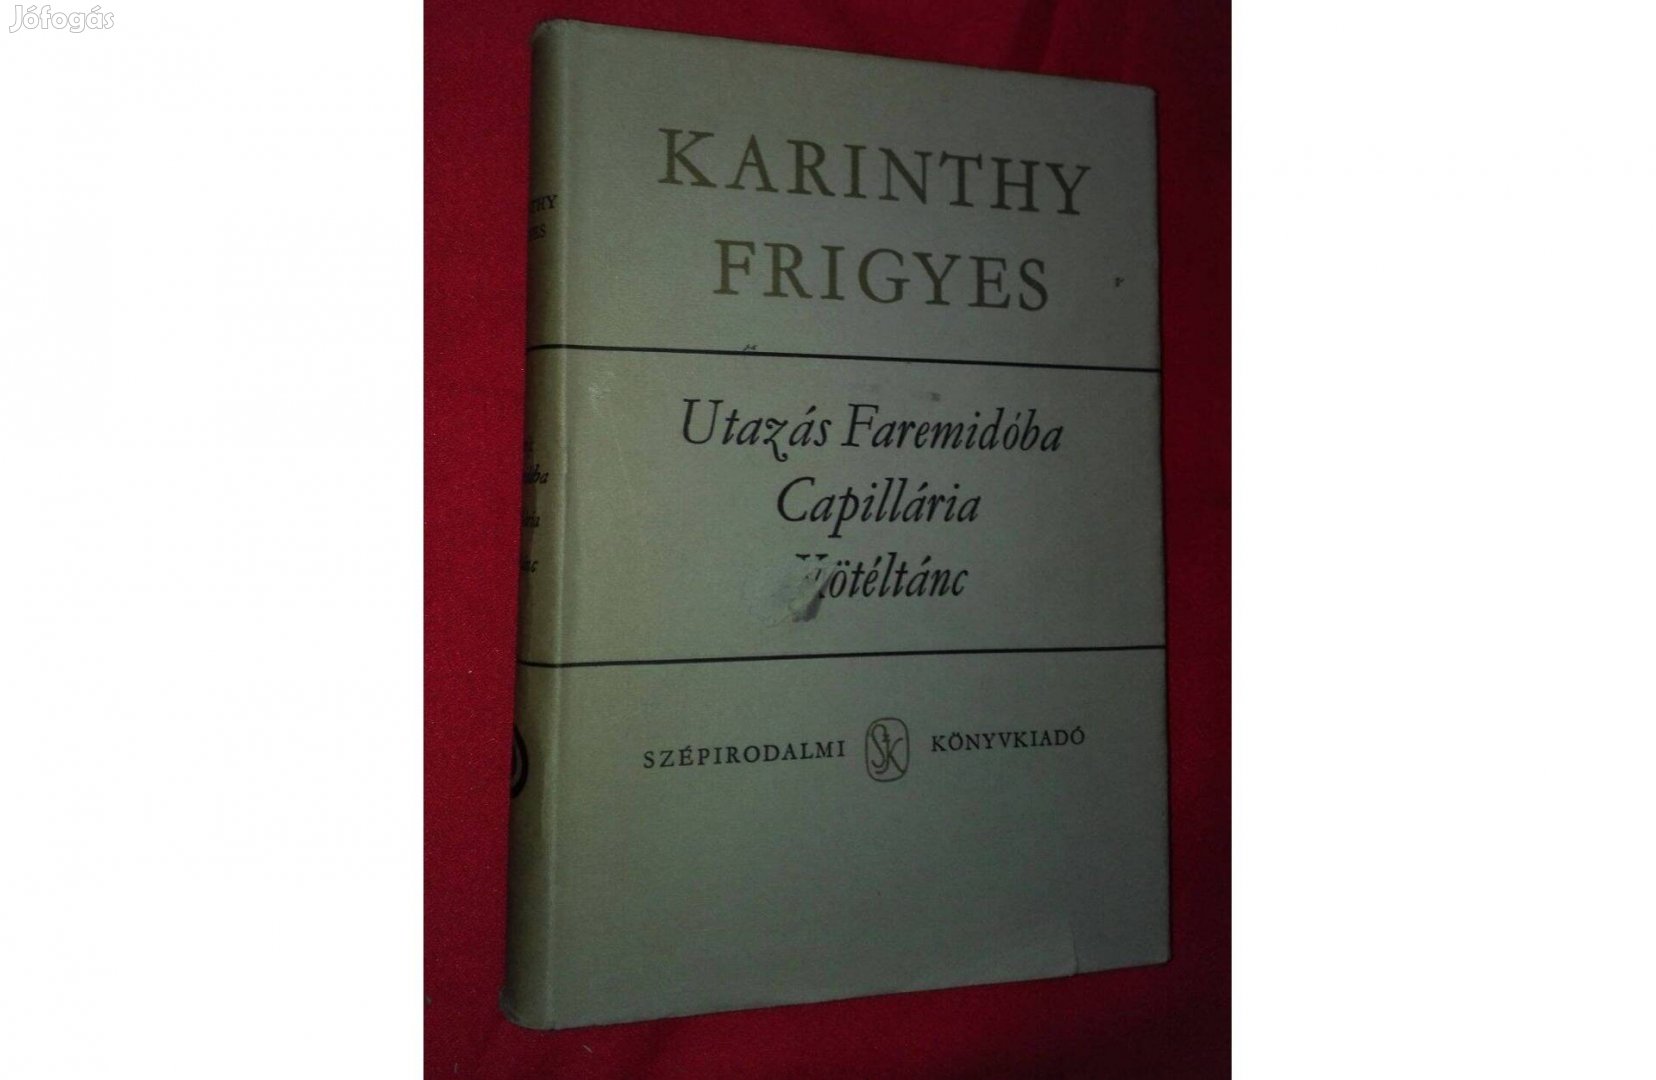 Karinthy Frigyes:Utazás Faremidóba, Capillária, Kötéltánc